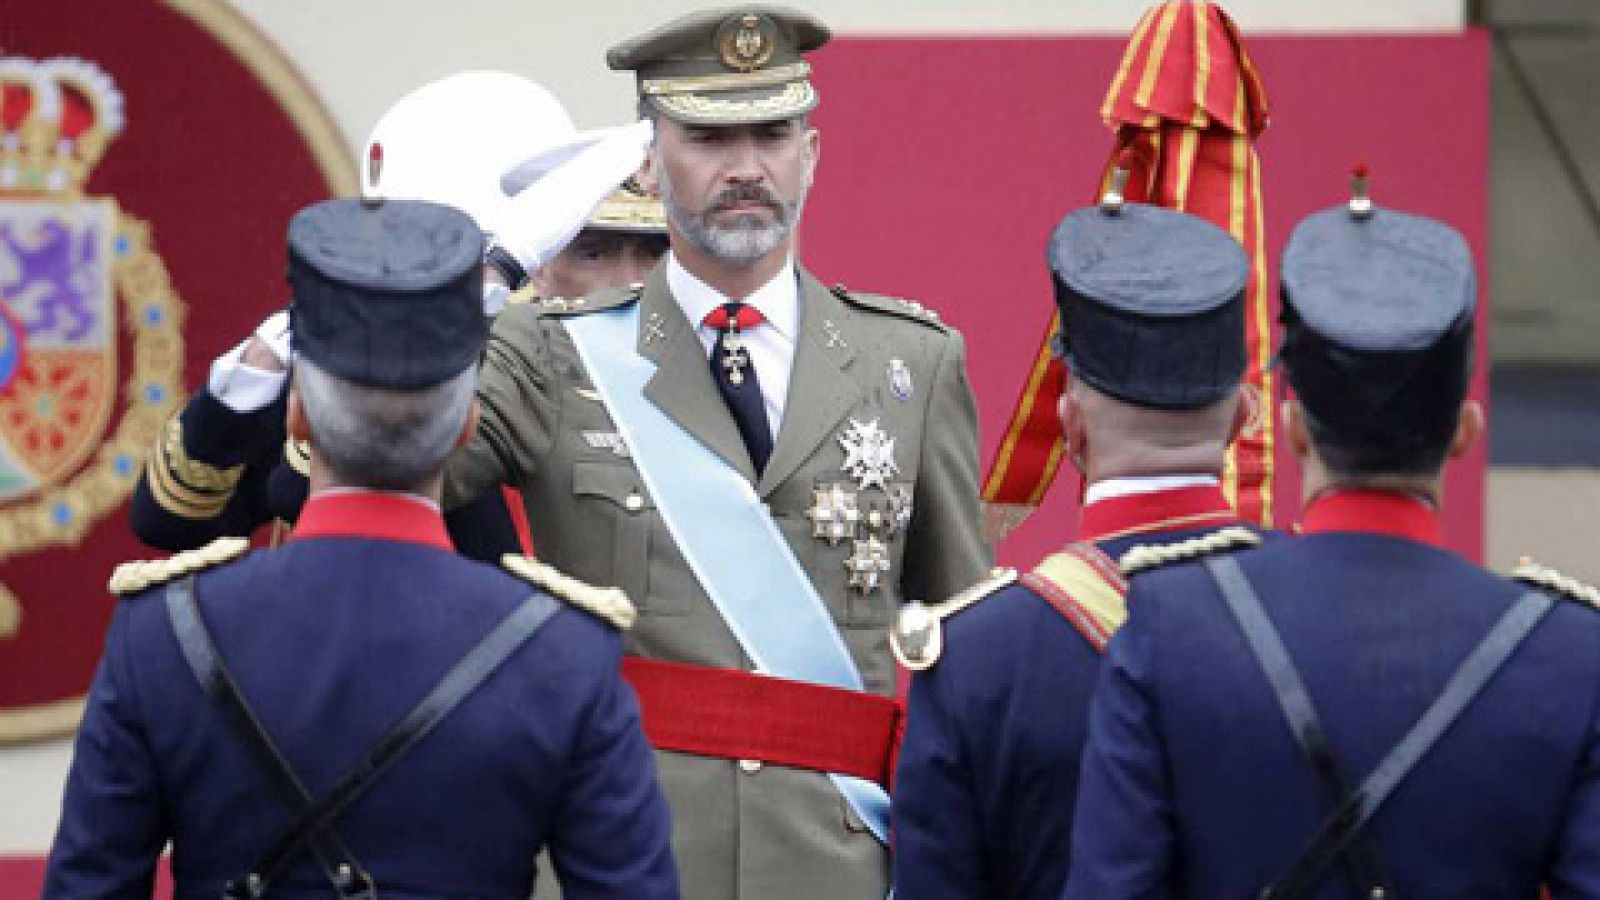 Día de la Fiesta Nacional - Los reyes presidirán el desfile del 12 de octubre bajo el lema "orgullosos de ser españoles"